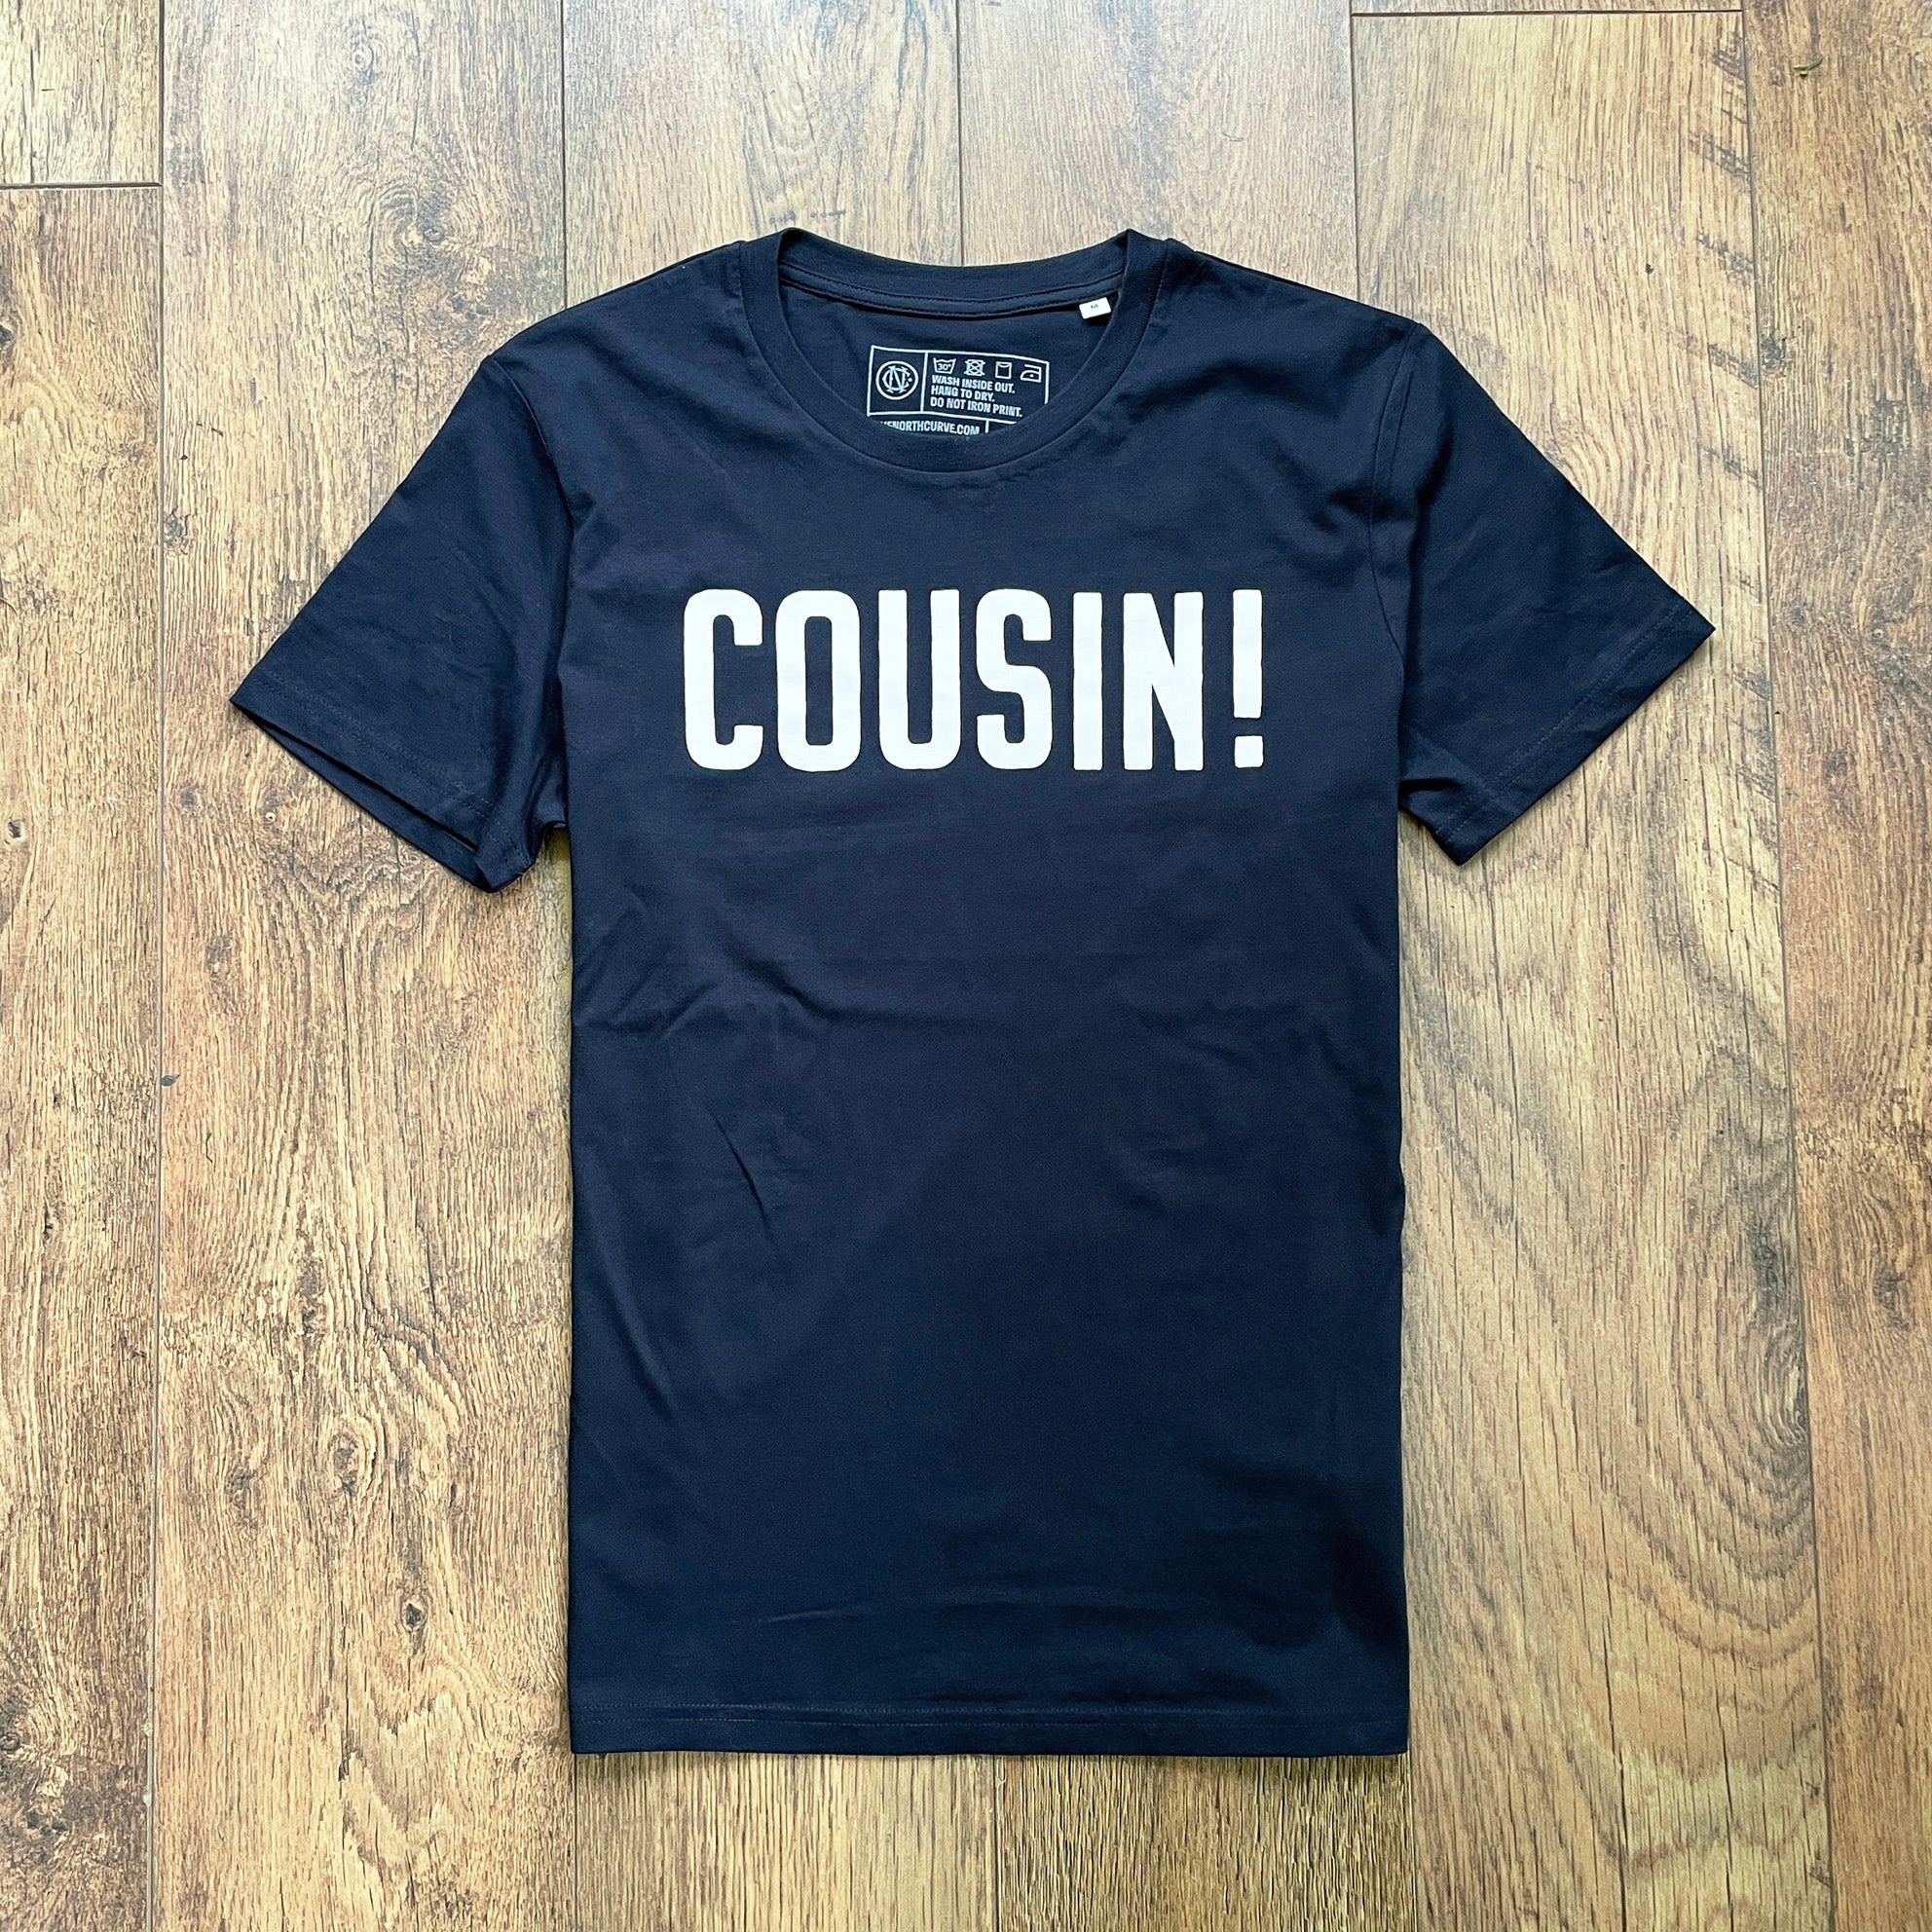 Cousin! T-shirt